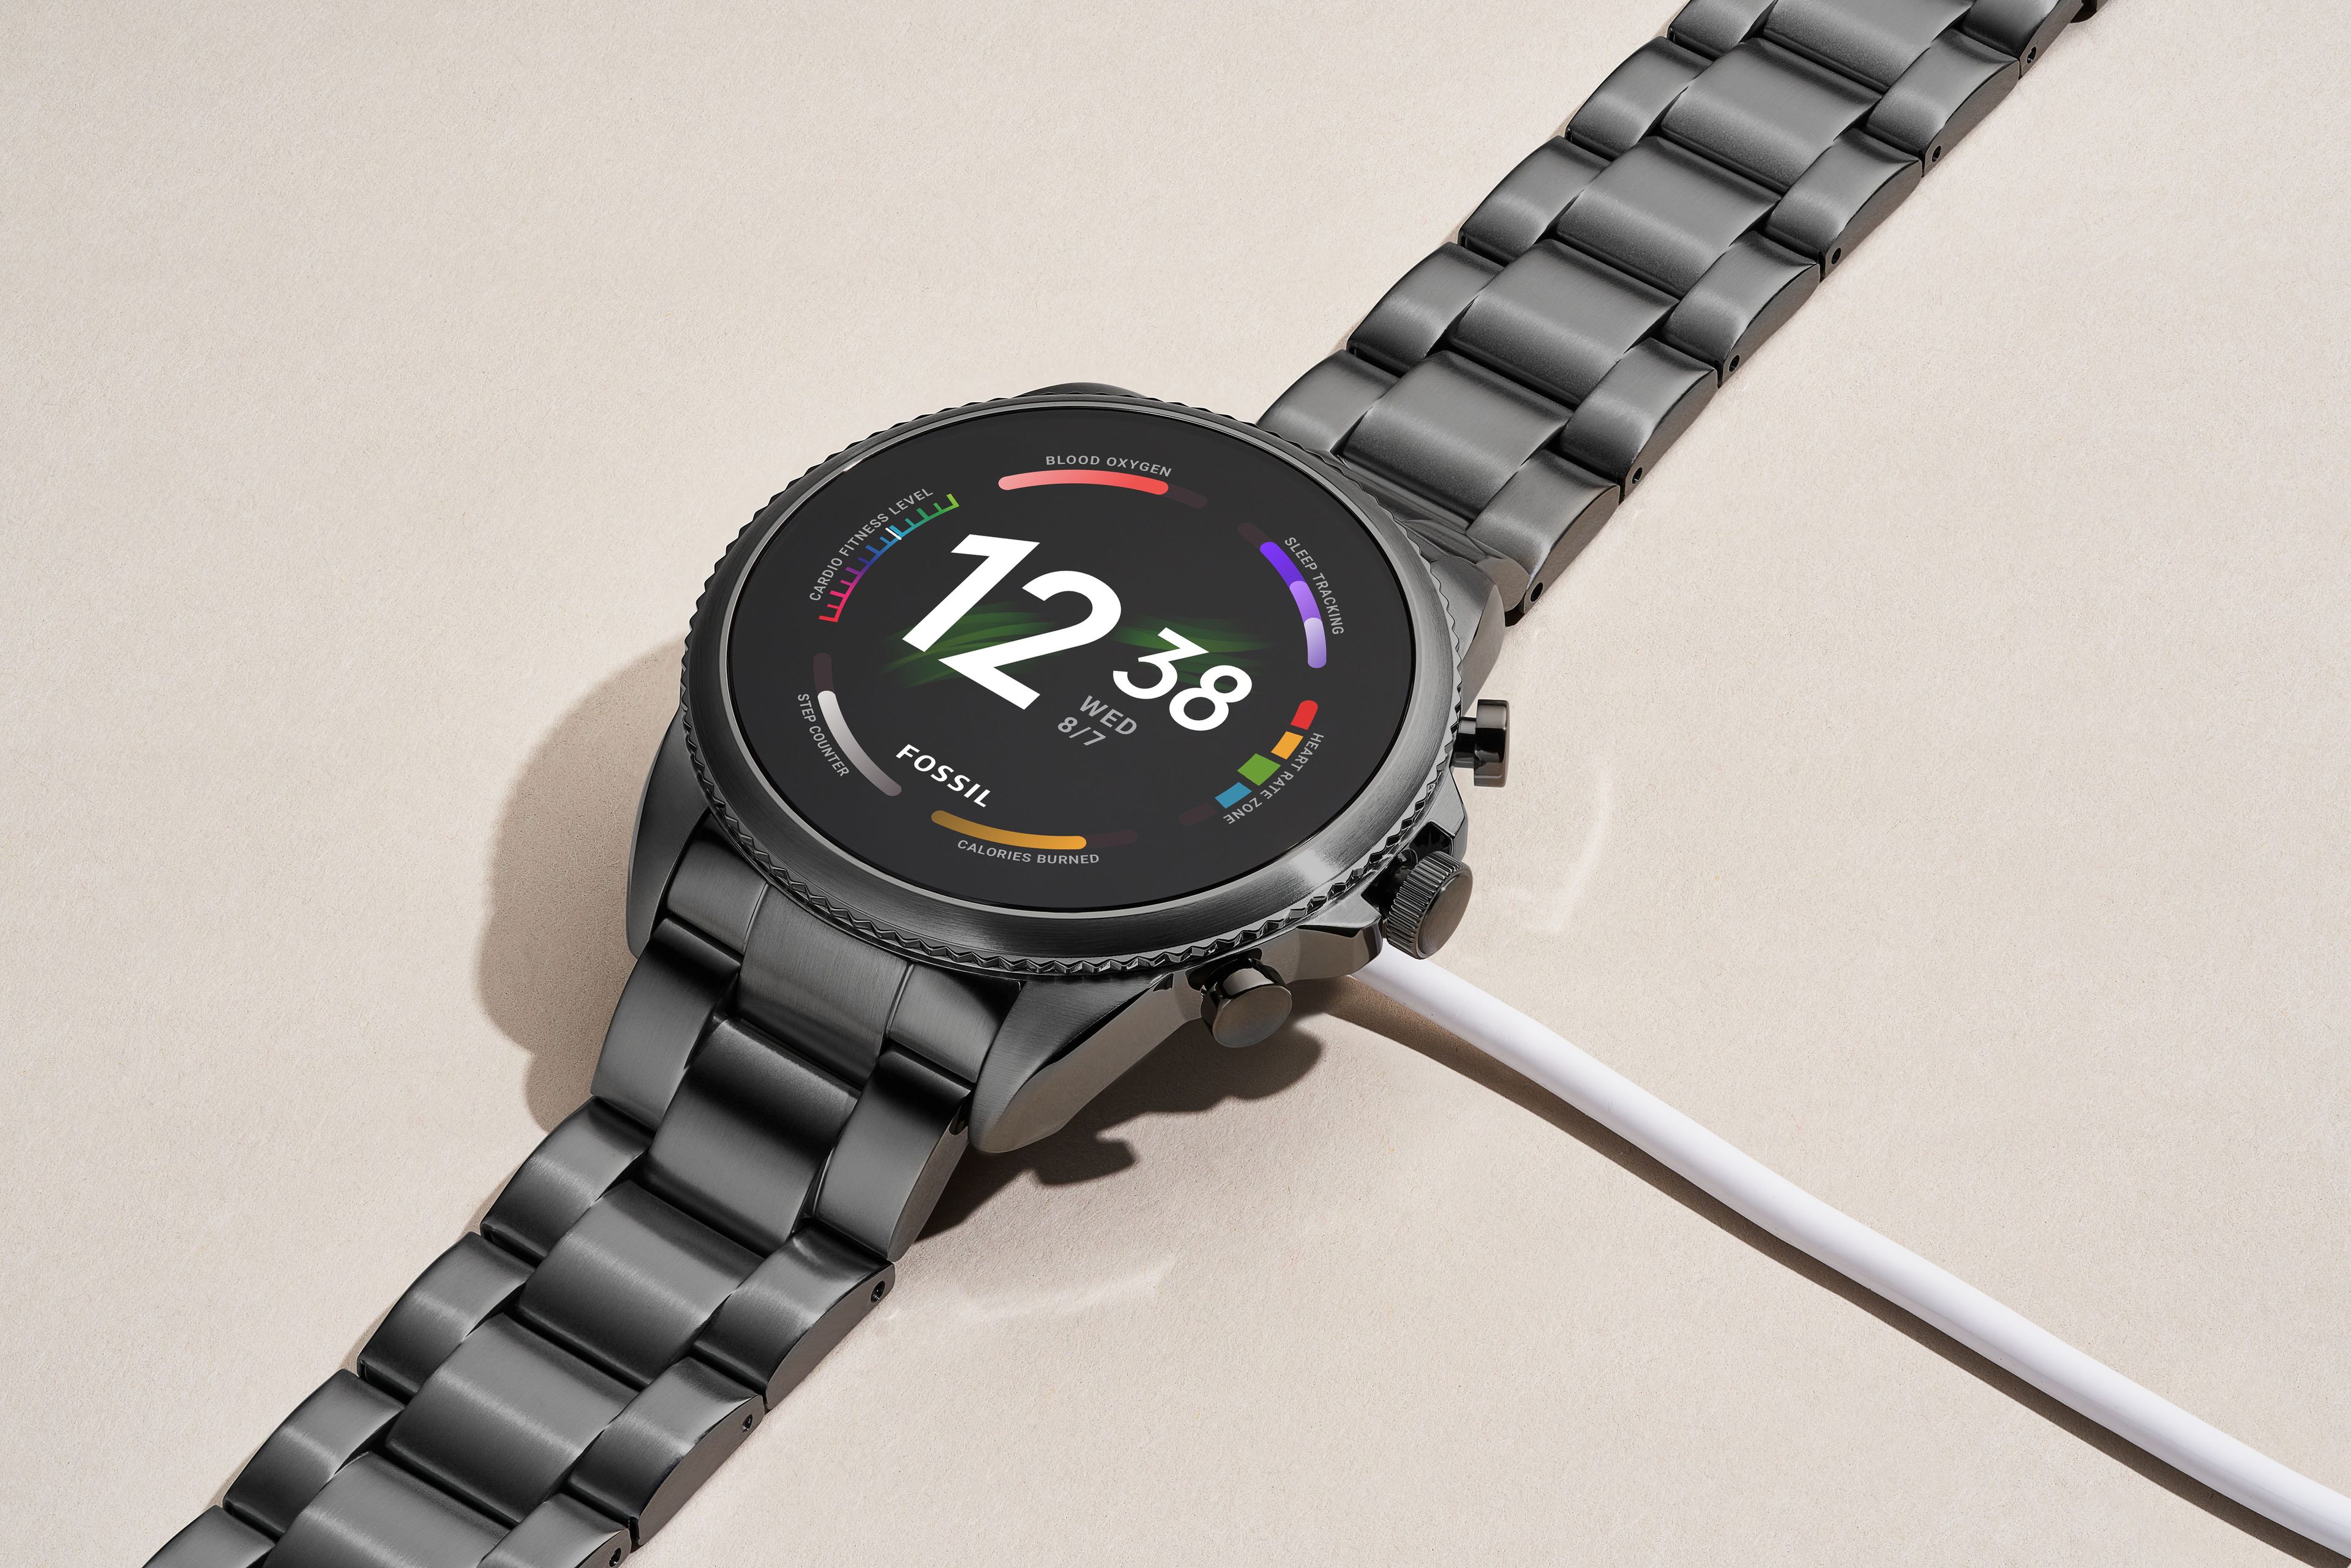 Fossil lanza su nuevo smartwatch Gen 6, procesador top y será actualizable a Wear OS 3